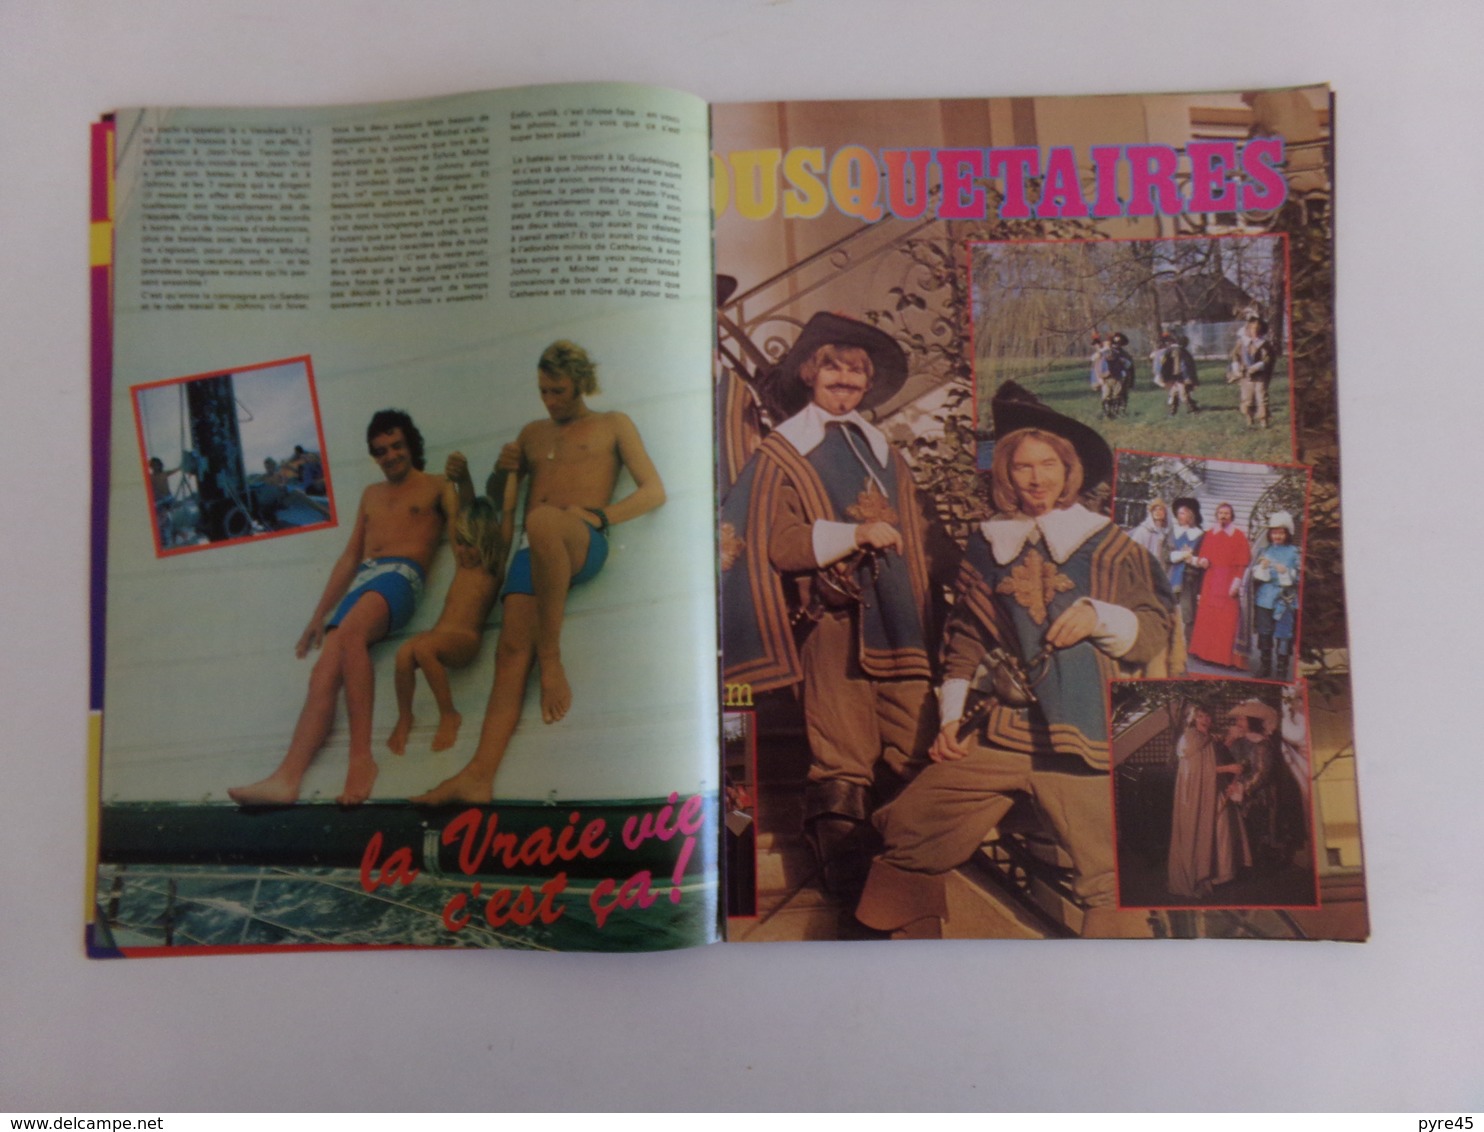 Revue " Stéphanie " n° 31, 1977, Johnny, Michel Sardou, Jeane Manson ( pages désolidarisées )